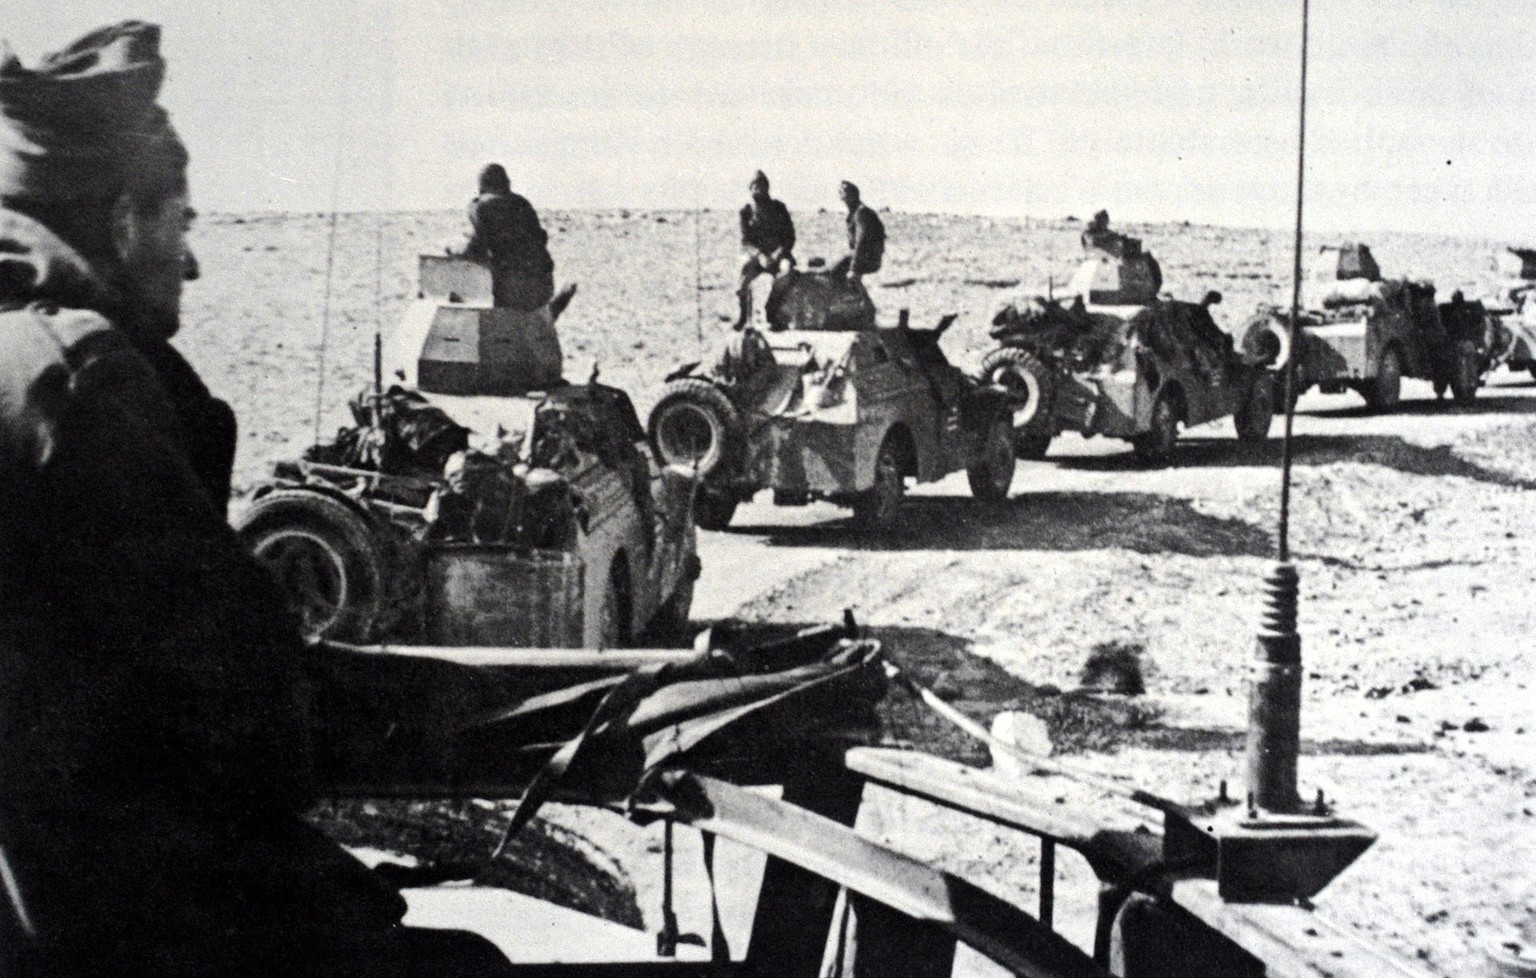 Palmach-Patrouille während des Unabhängigkeitskrieges im Negev, 1948
https://de.wikipedia.org/wiki/Palmach#/media/Datei:Palmach_Negev.jpg